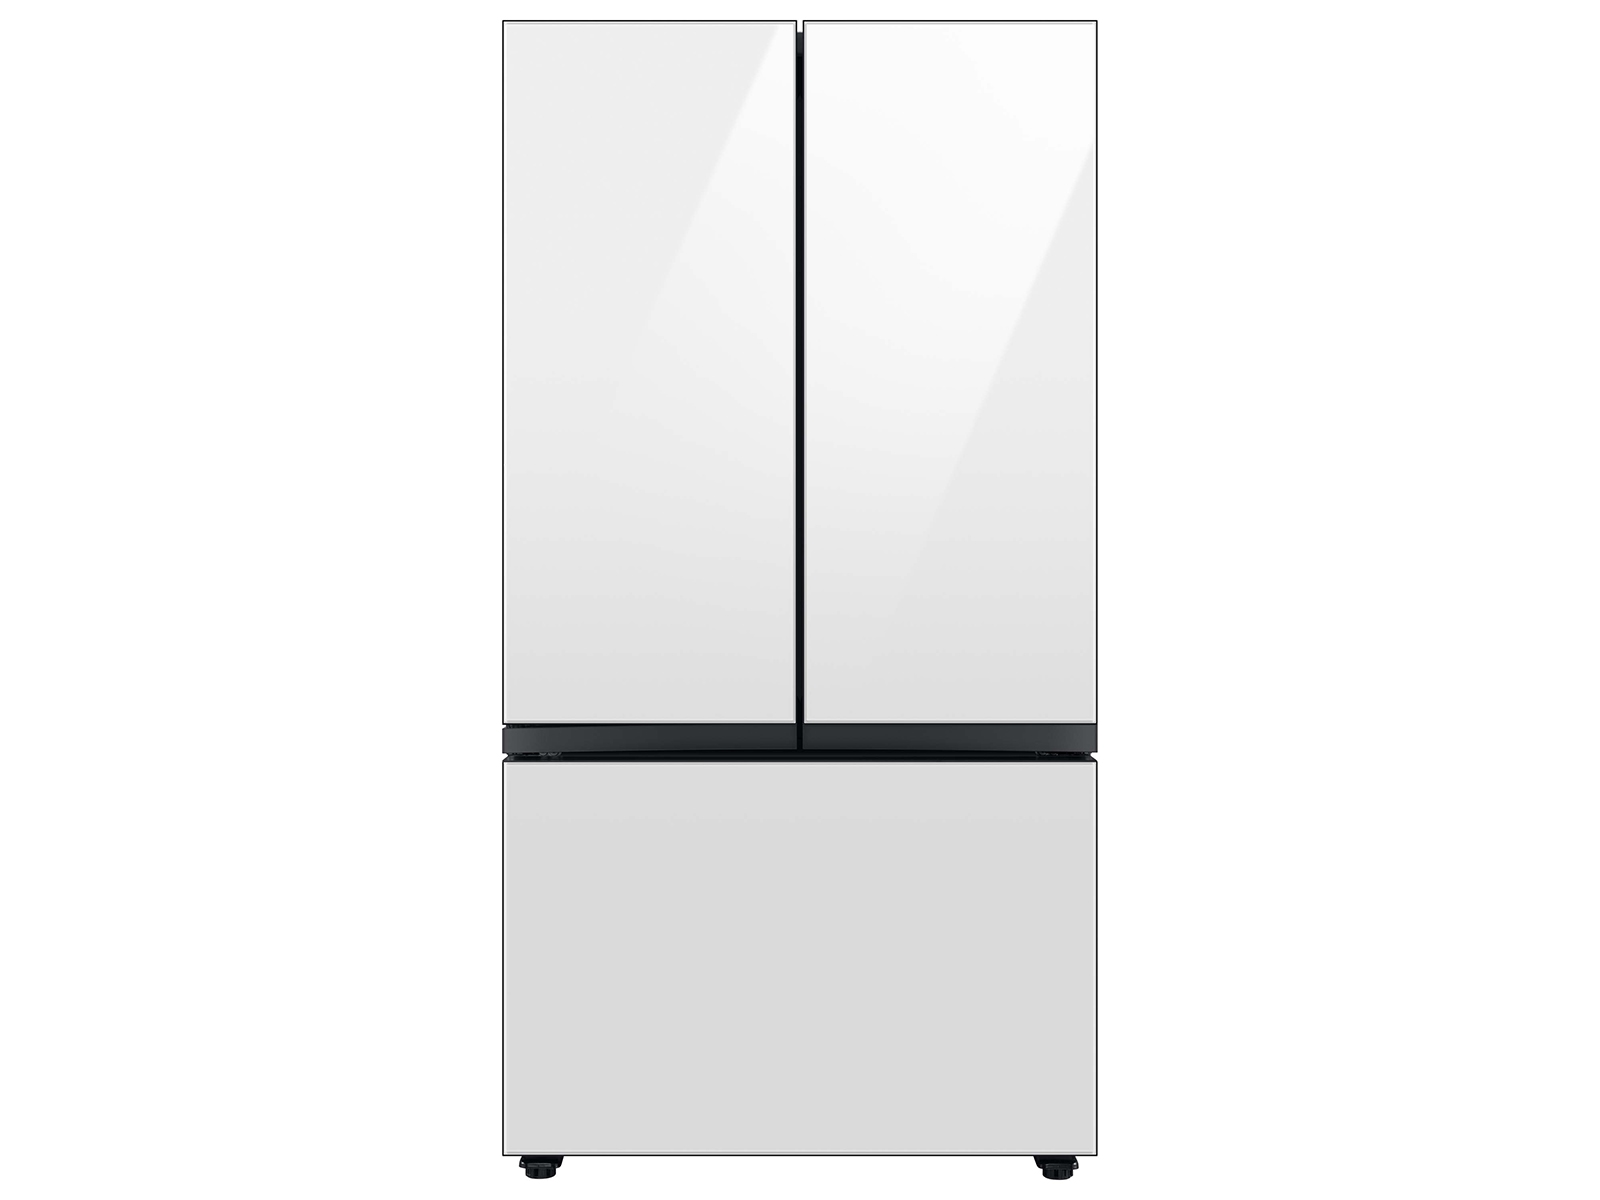 Photos - Fridge Samsung Bespoke 3-Door French Door Refrigerator  with Beverage (30 cu. ft.)